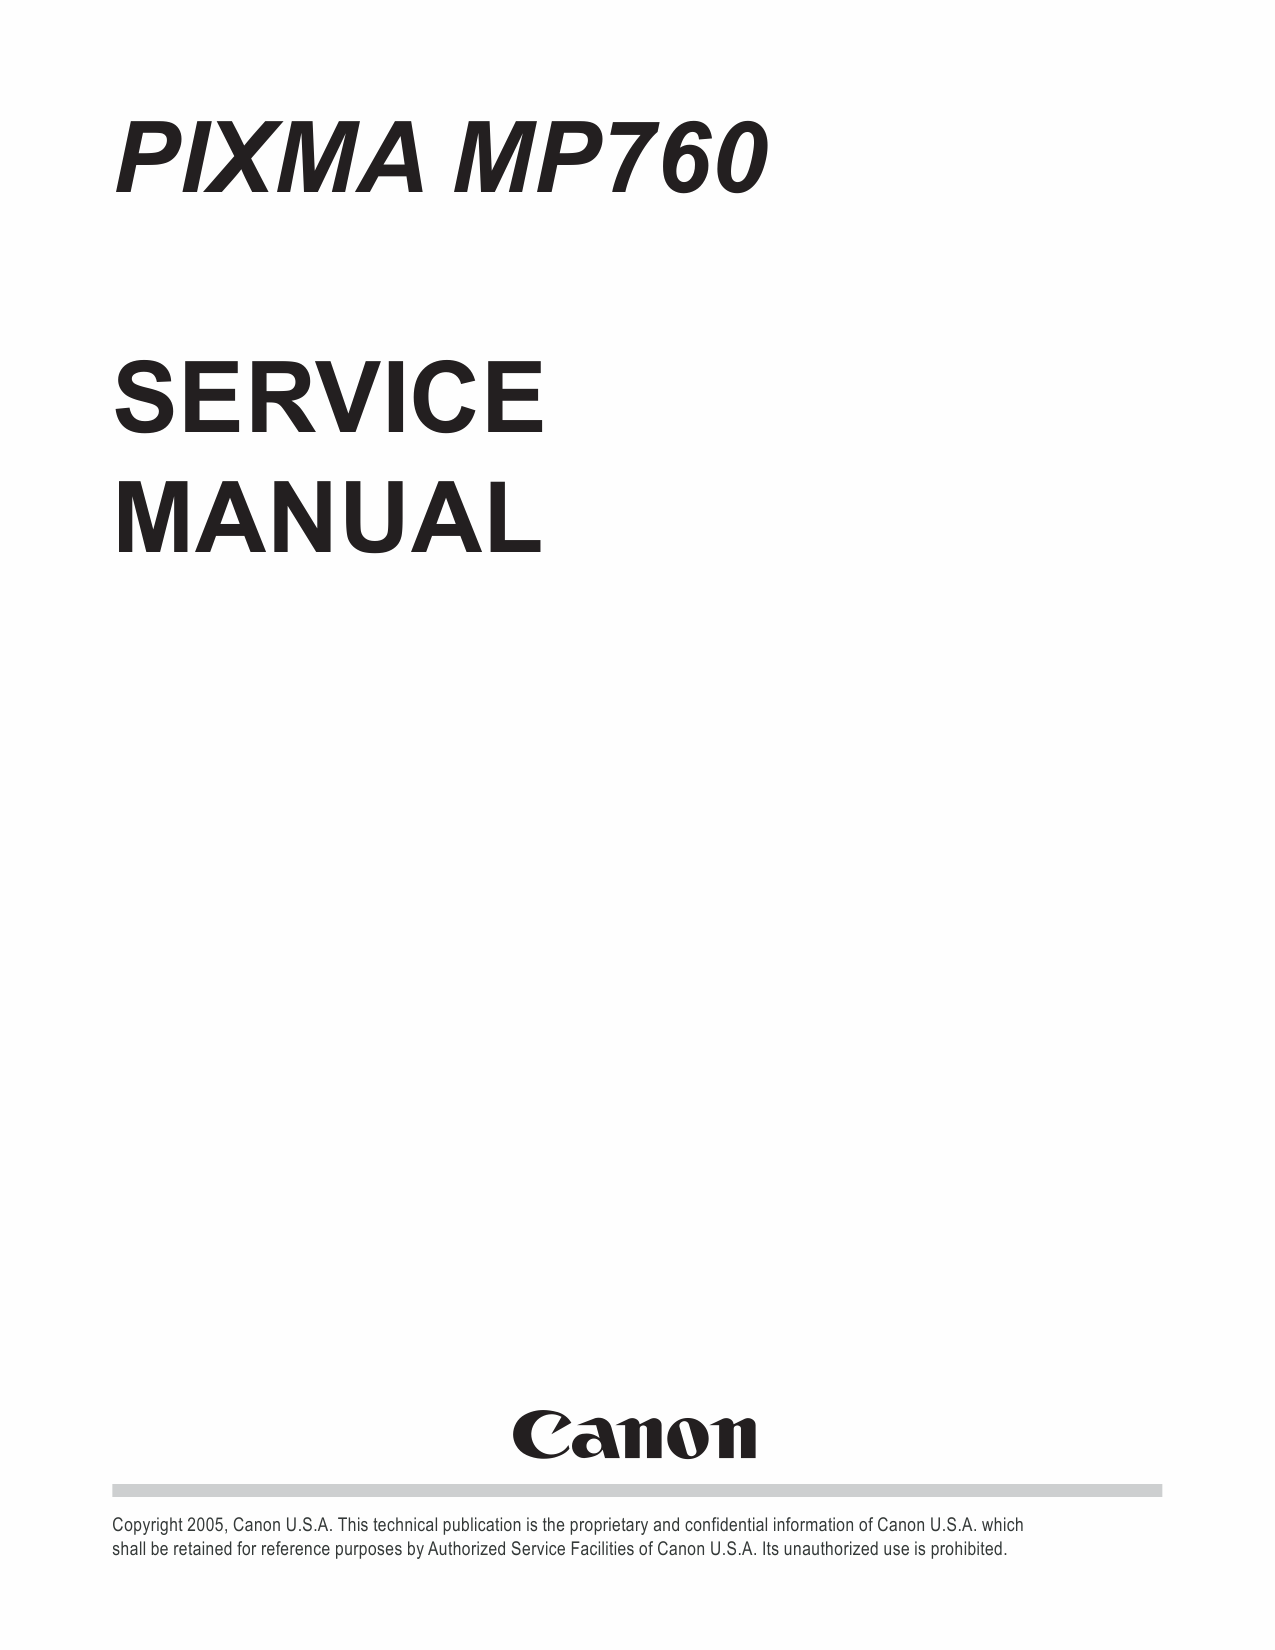 Canon PIXMA MP760 Service Manual-1